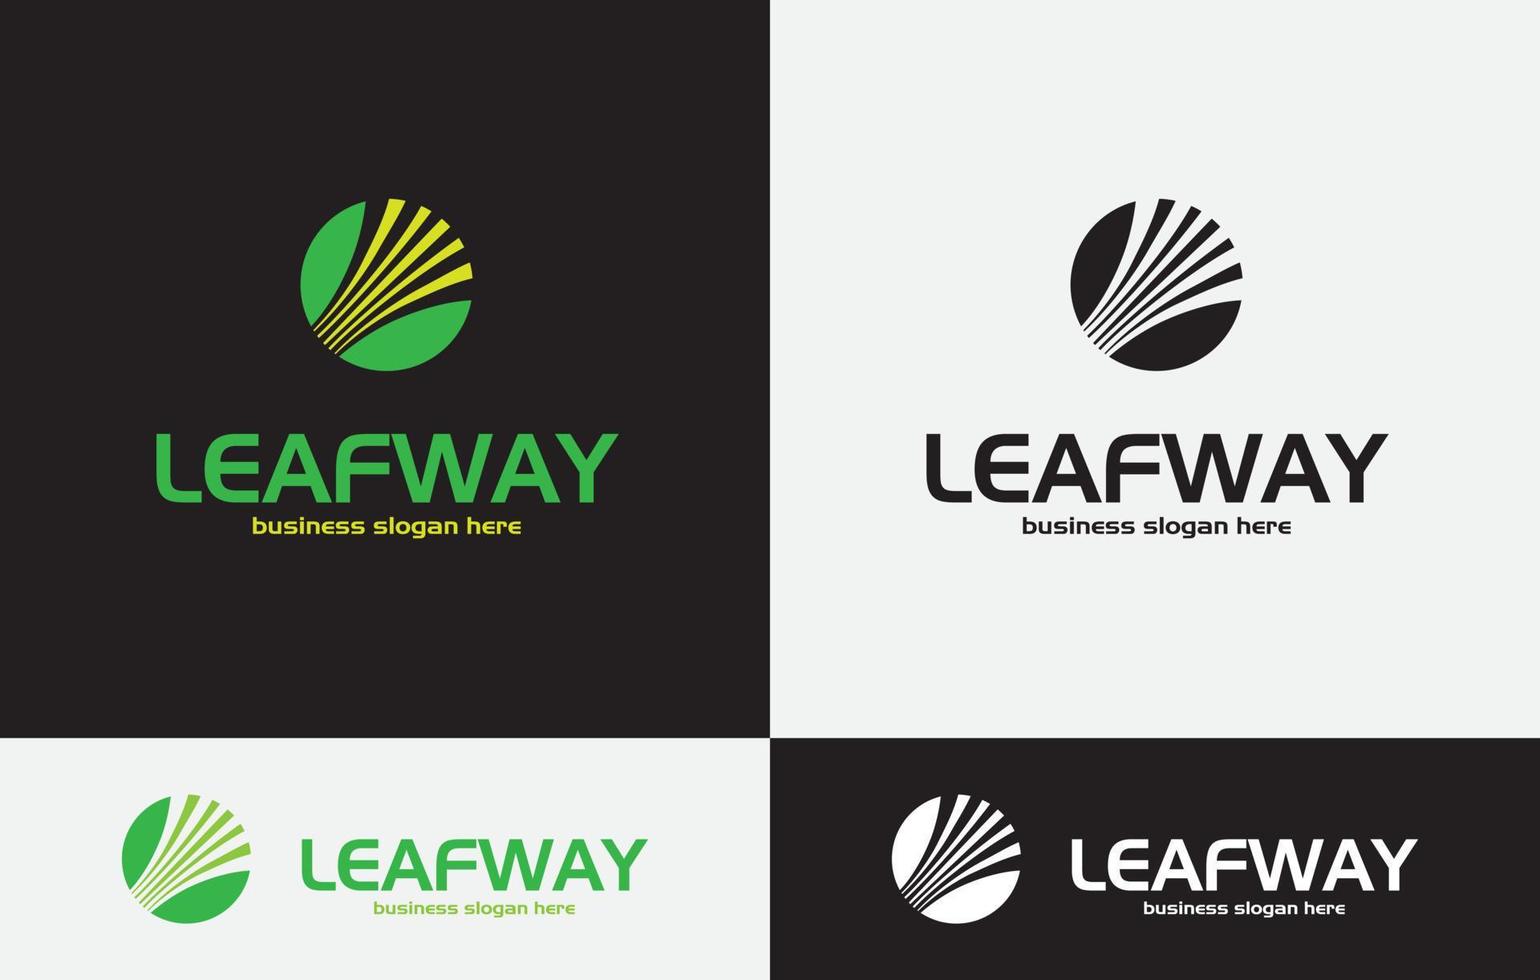 Leaf way Logo design vector art eps